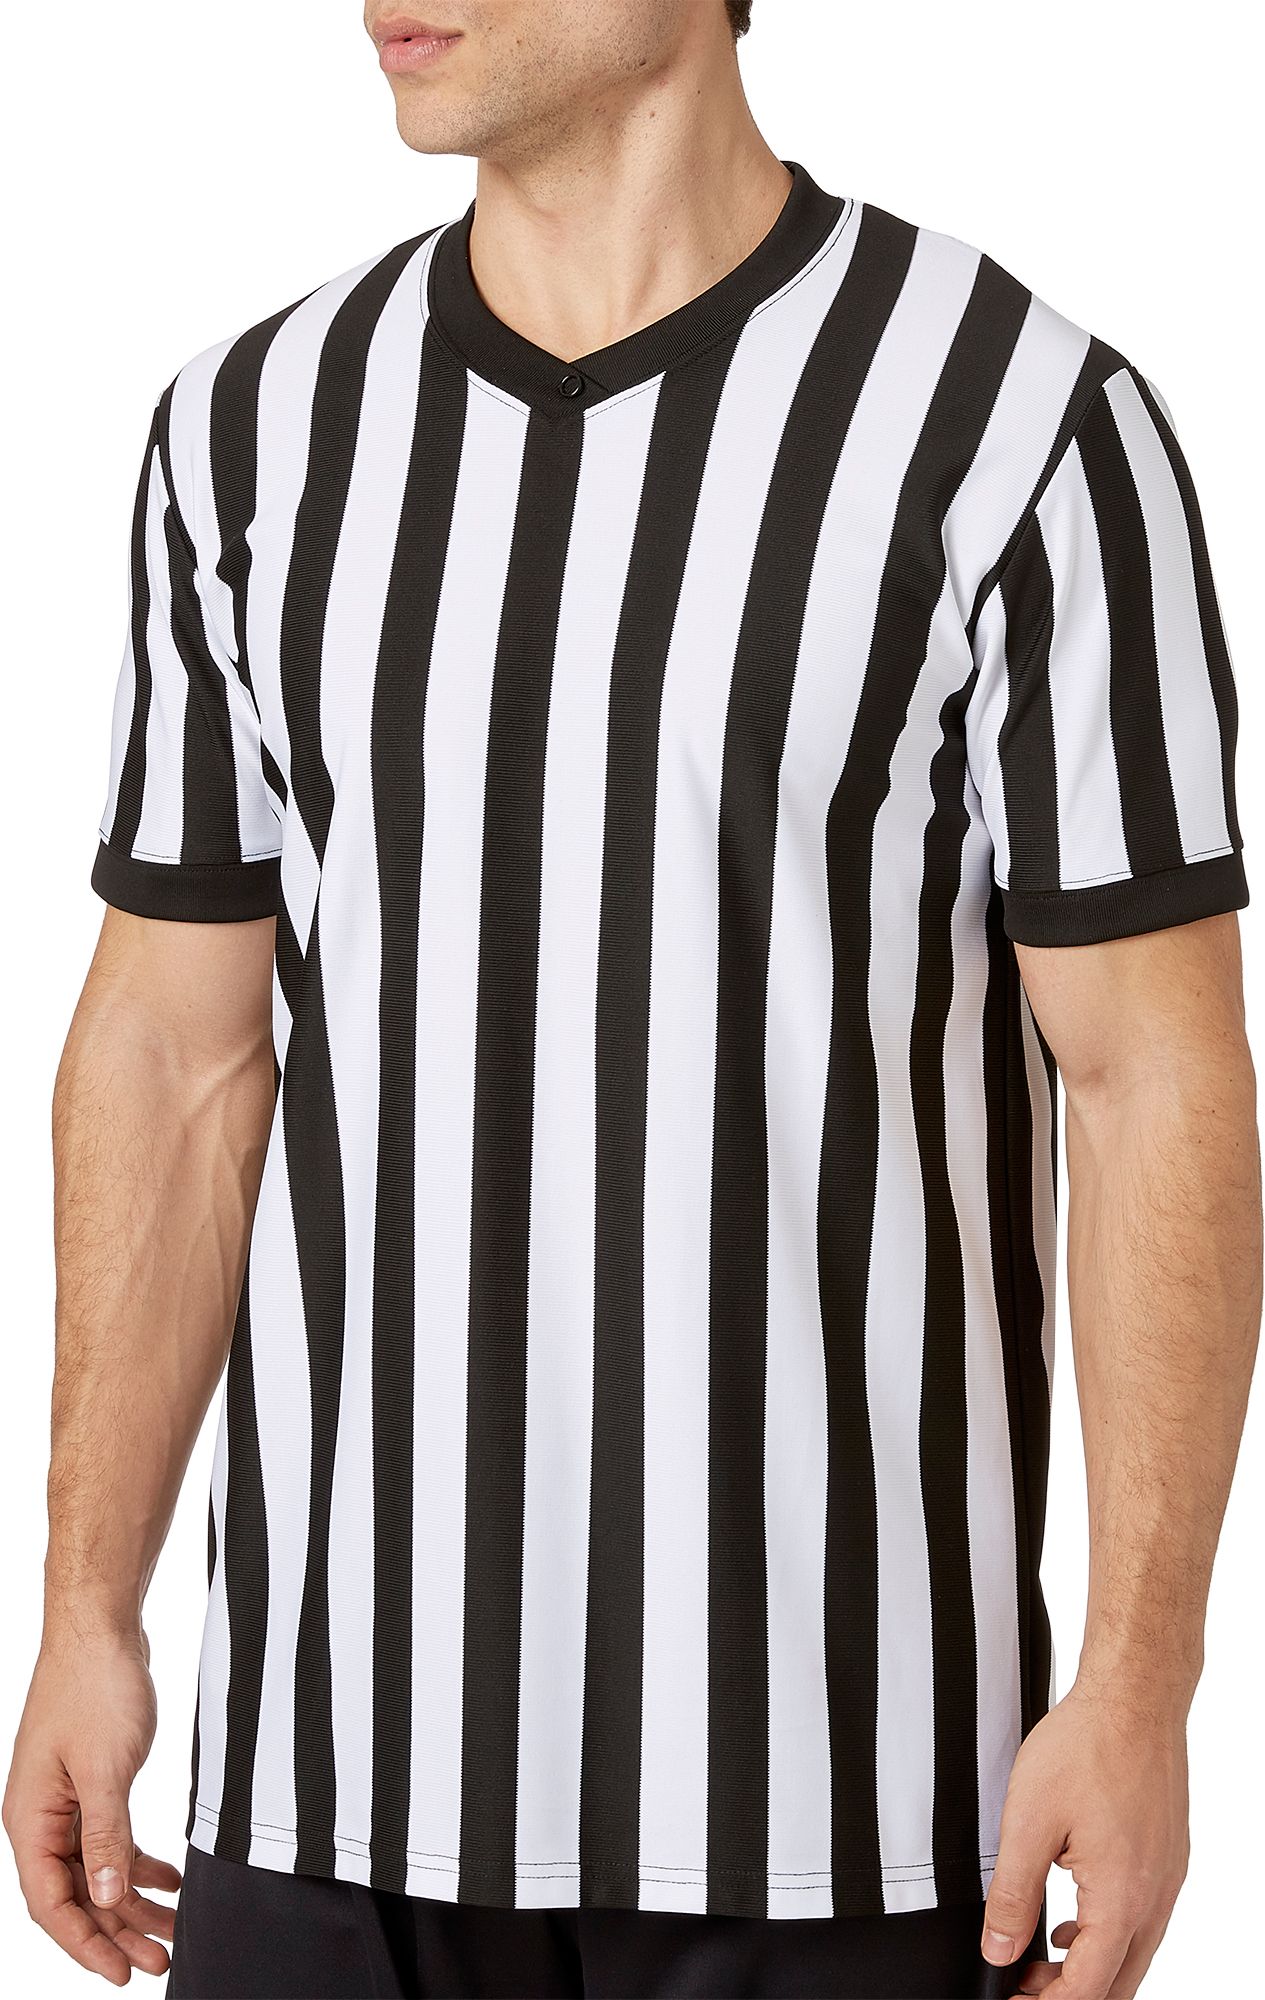 referee jersey